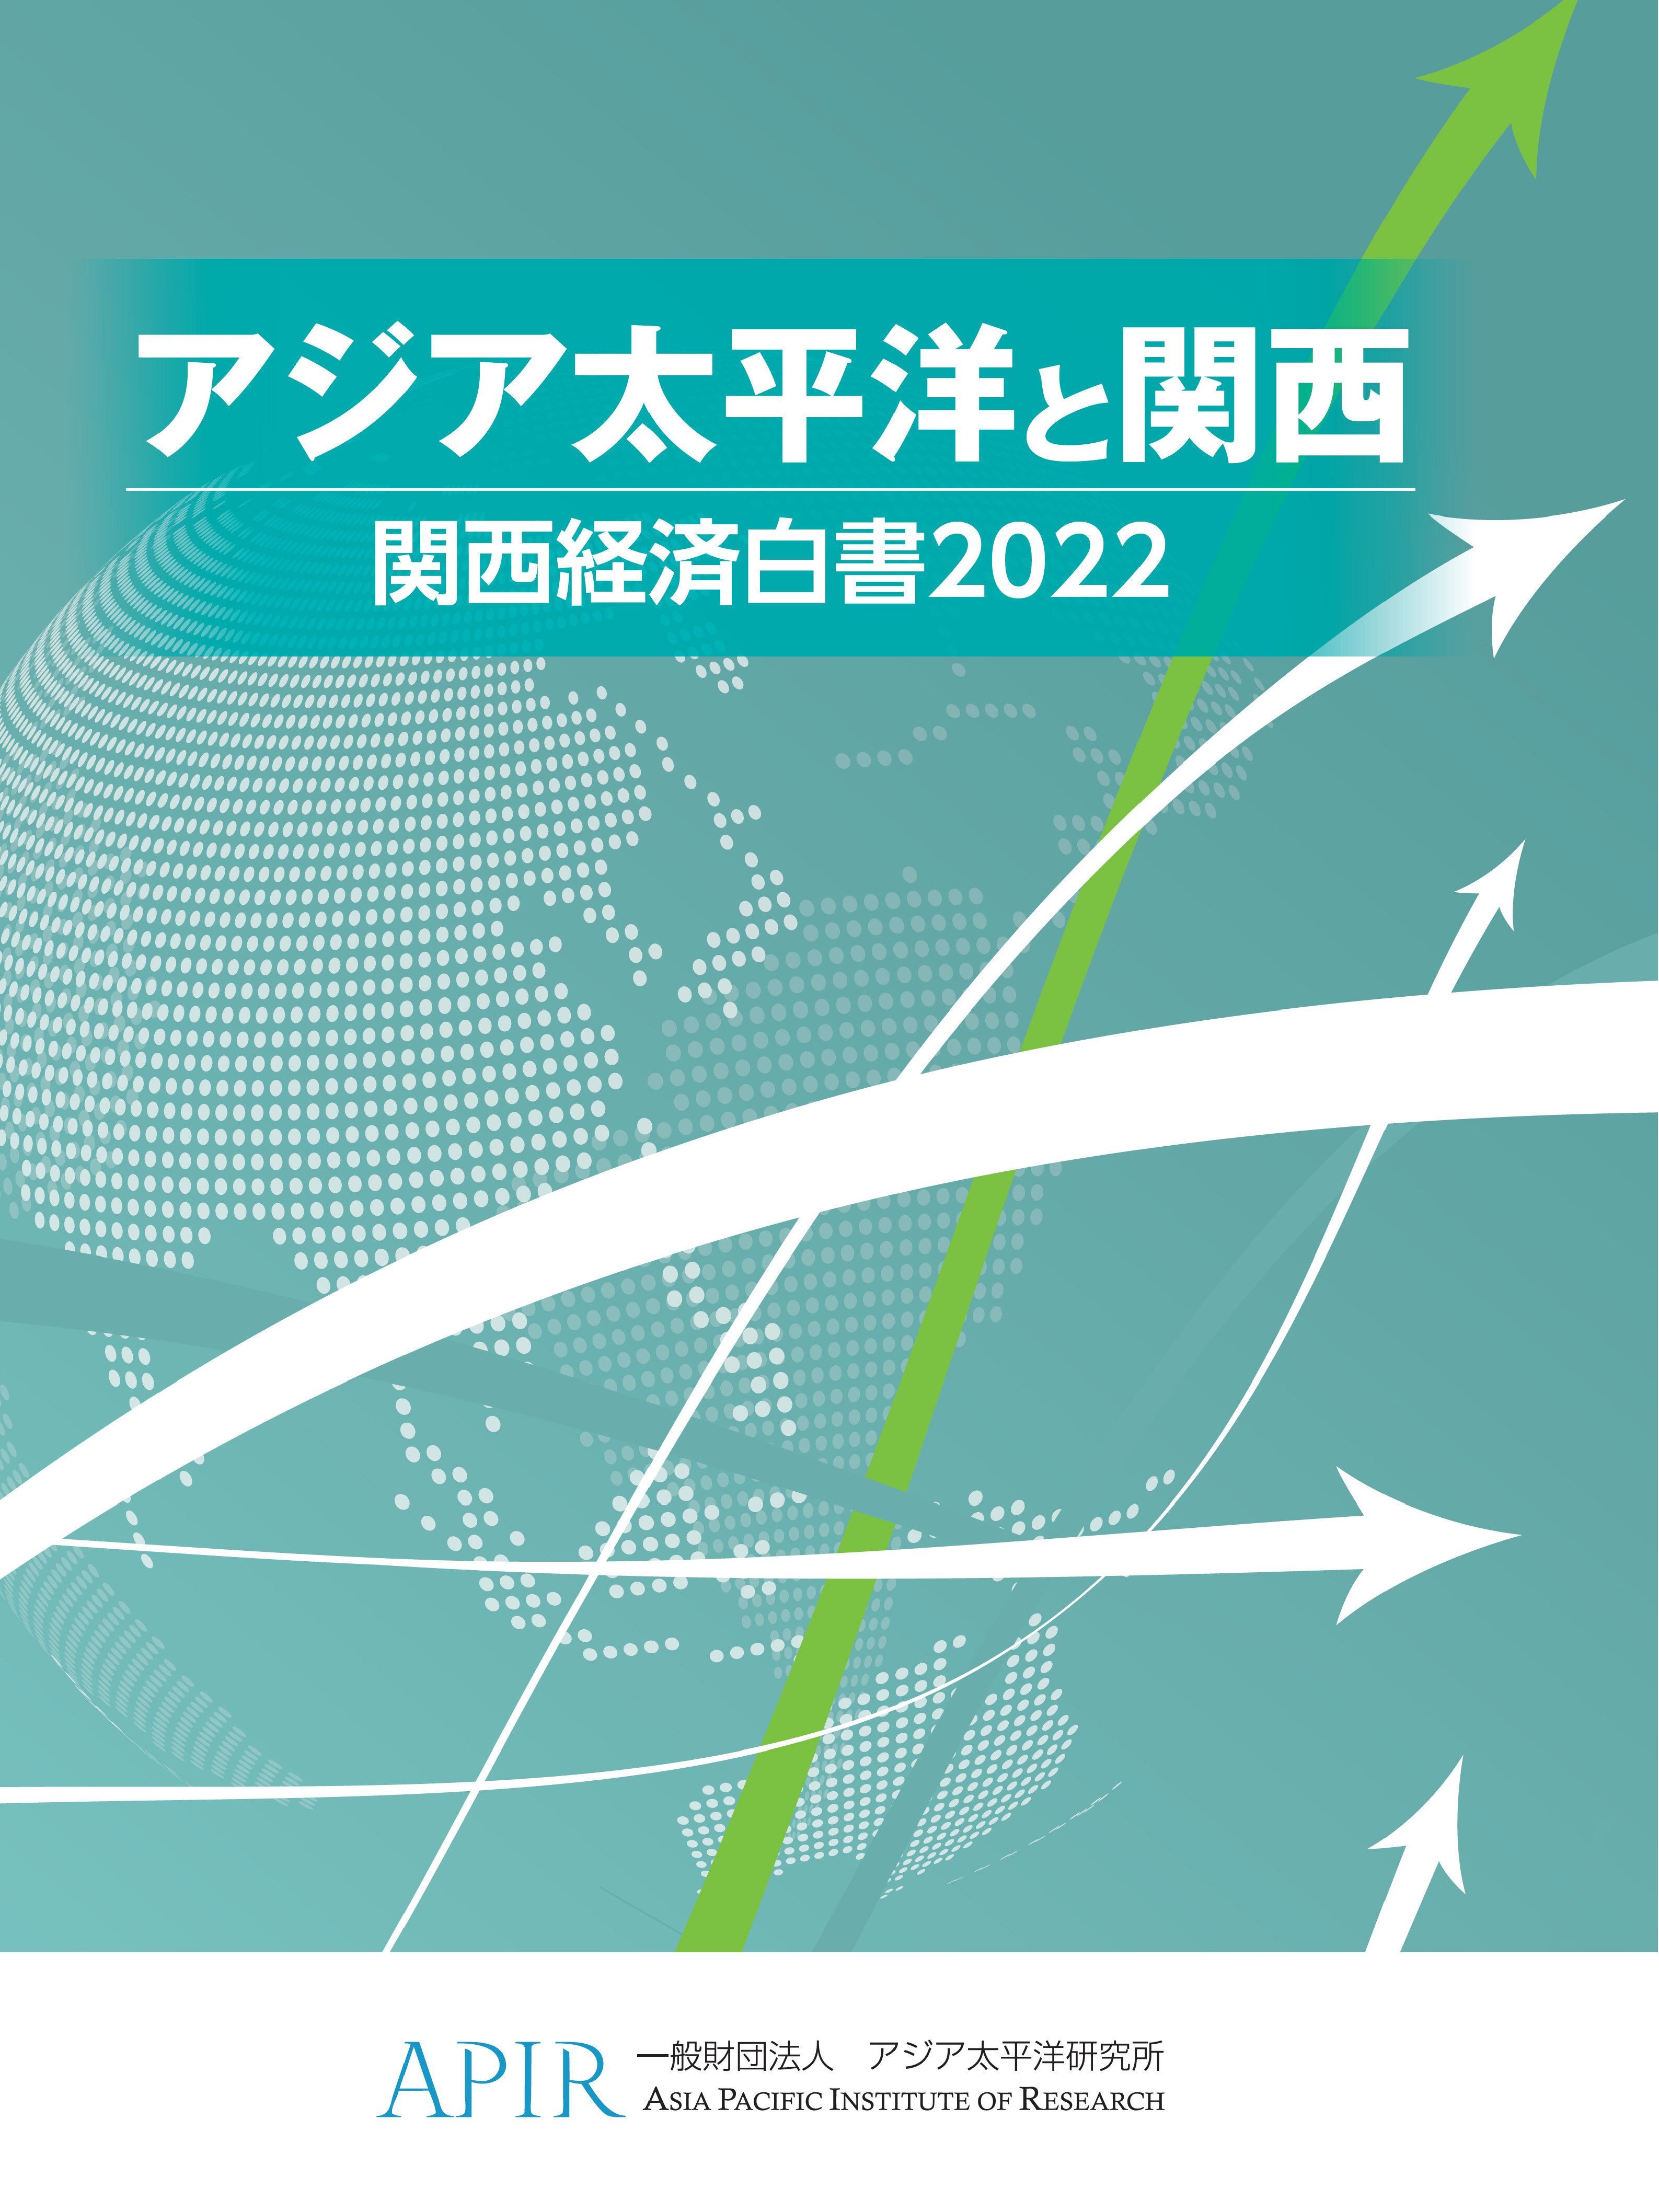 アジア太平洋と関西 関西経済白書2022